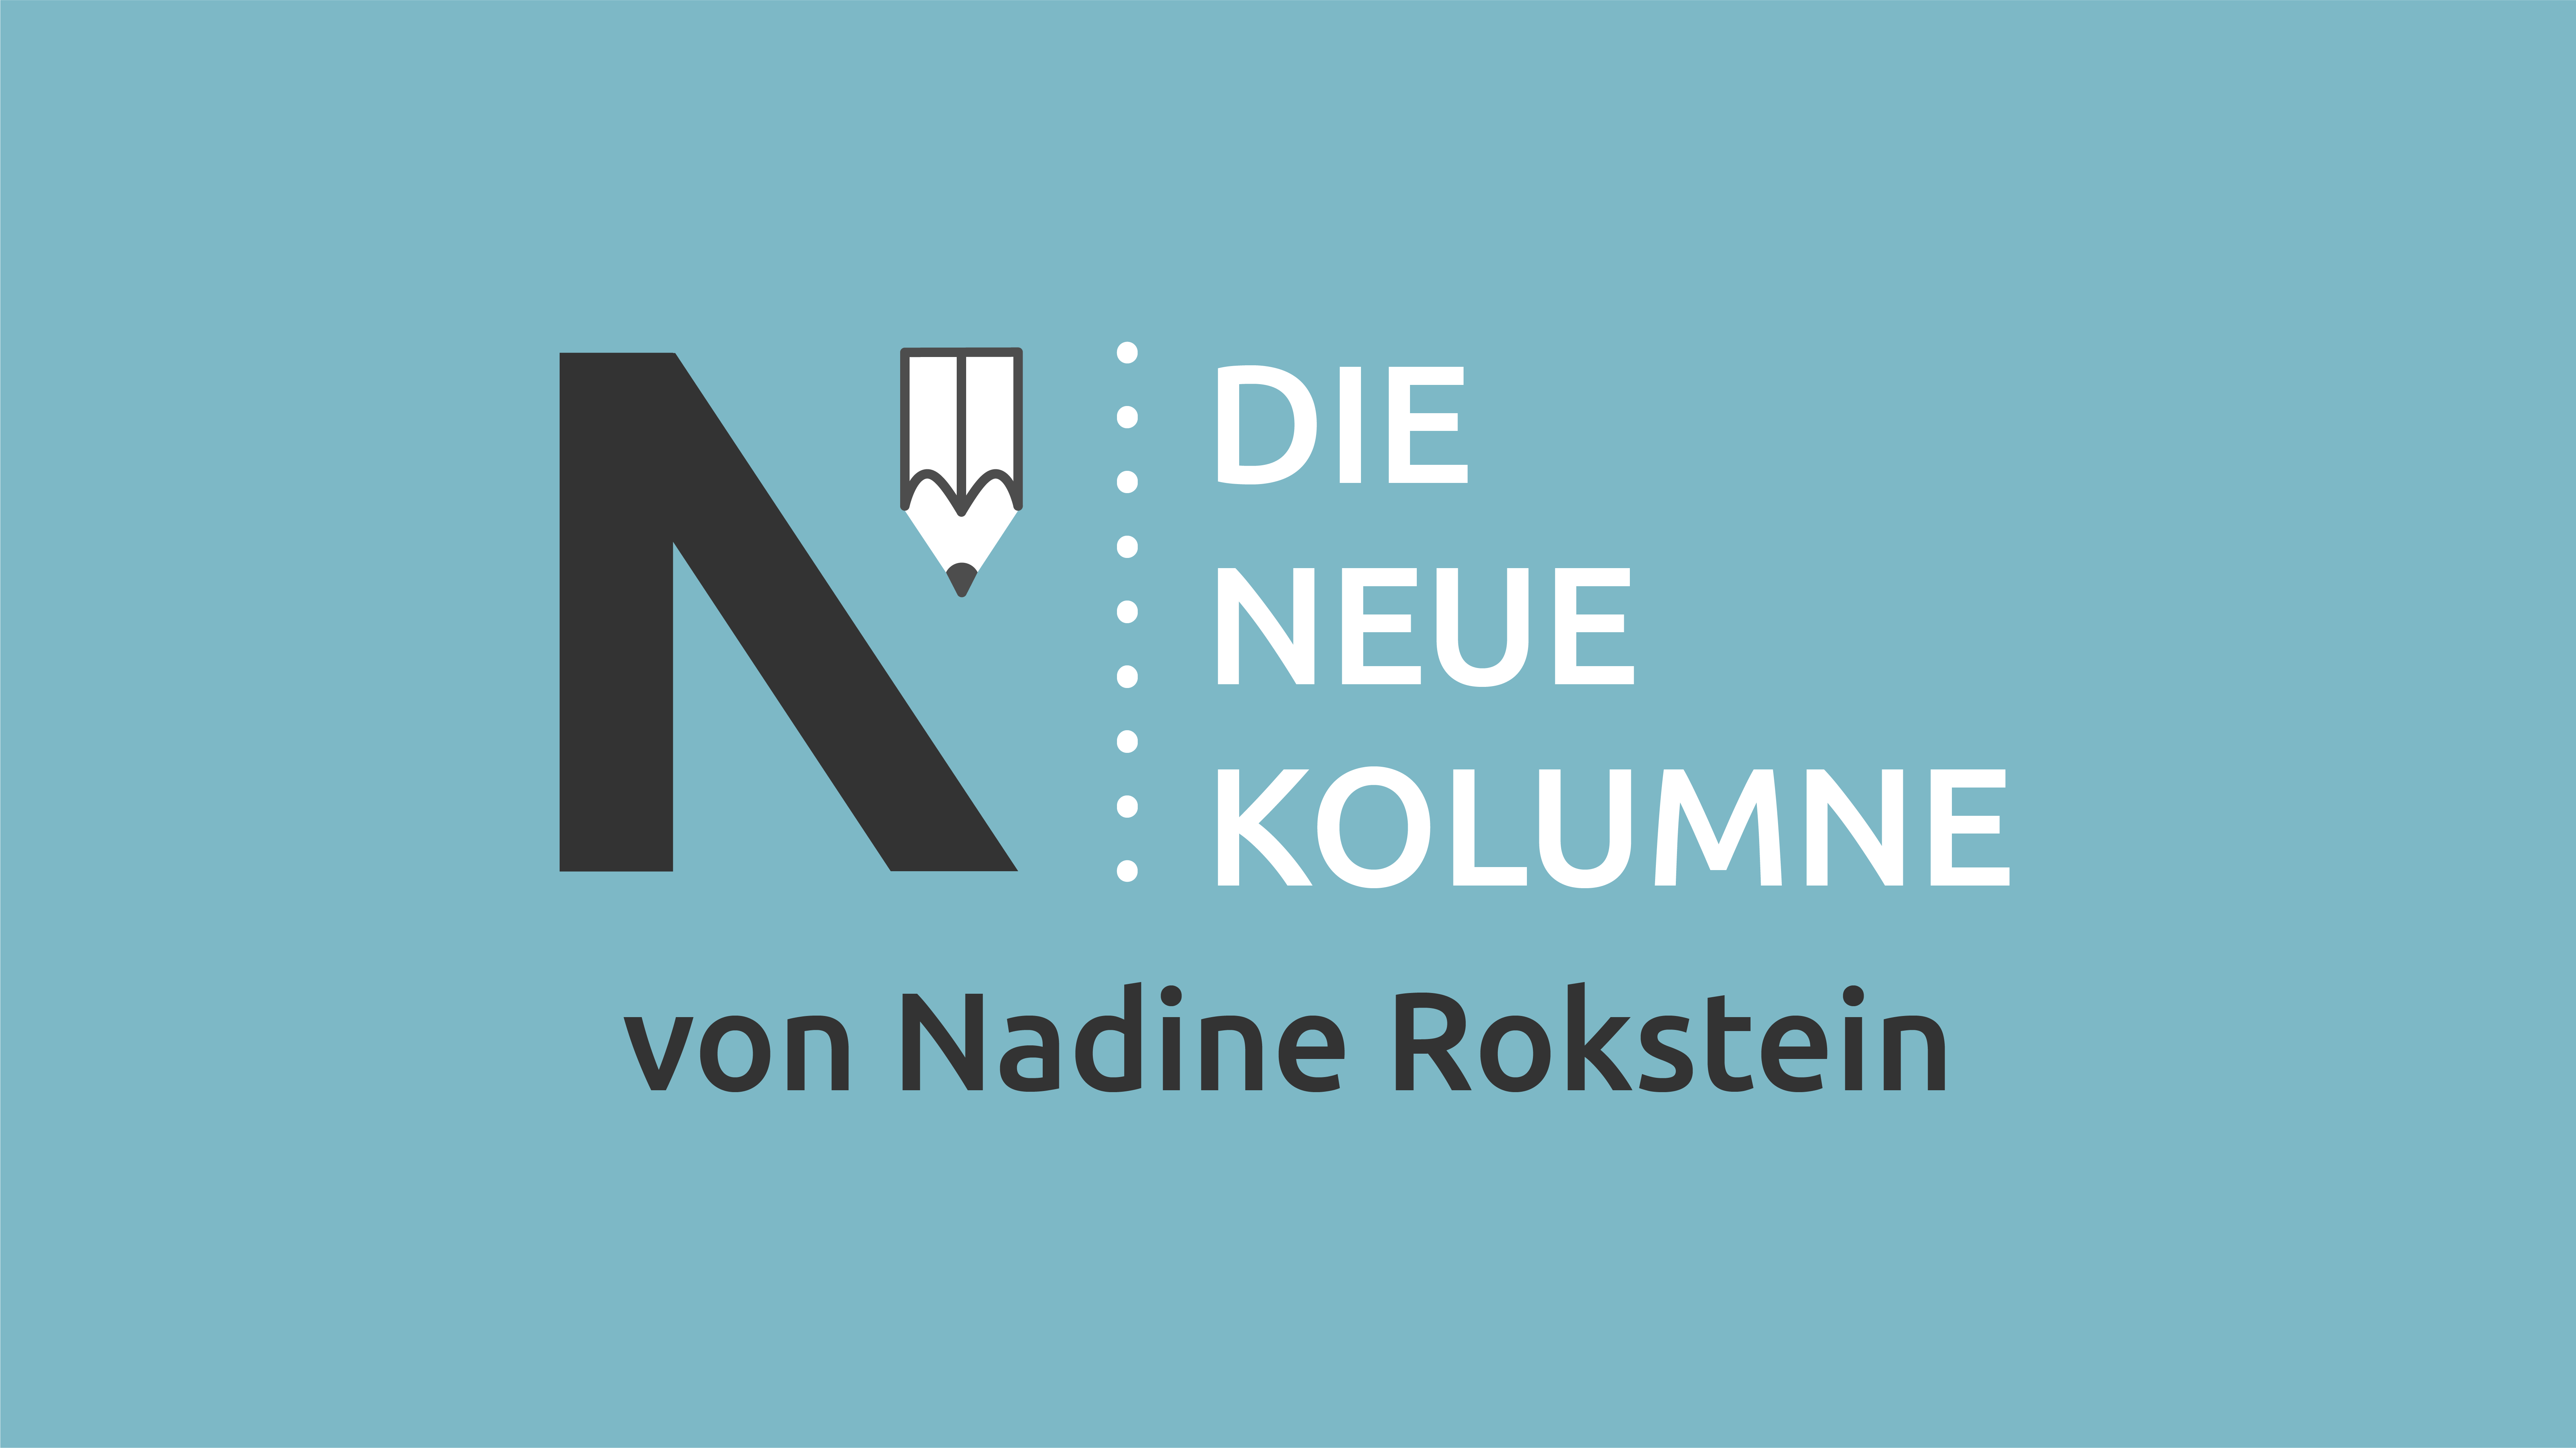 Das Logo von die neue Norm auf hellblauem Grund. Rechts davon steht: Die Neue Kolumne. Unten steht: Von Nadine Rokstein.